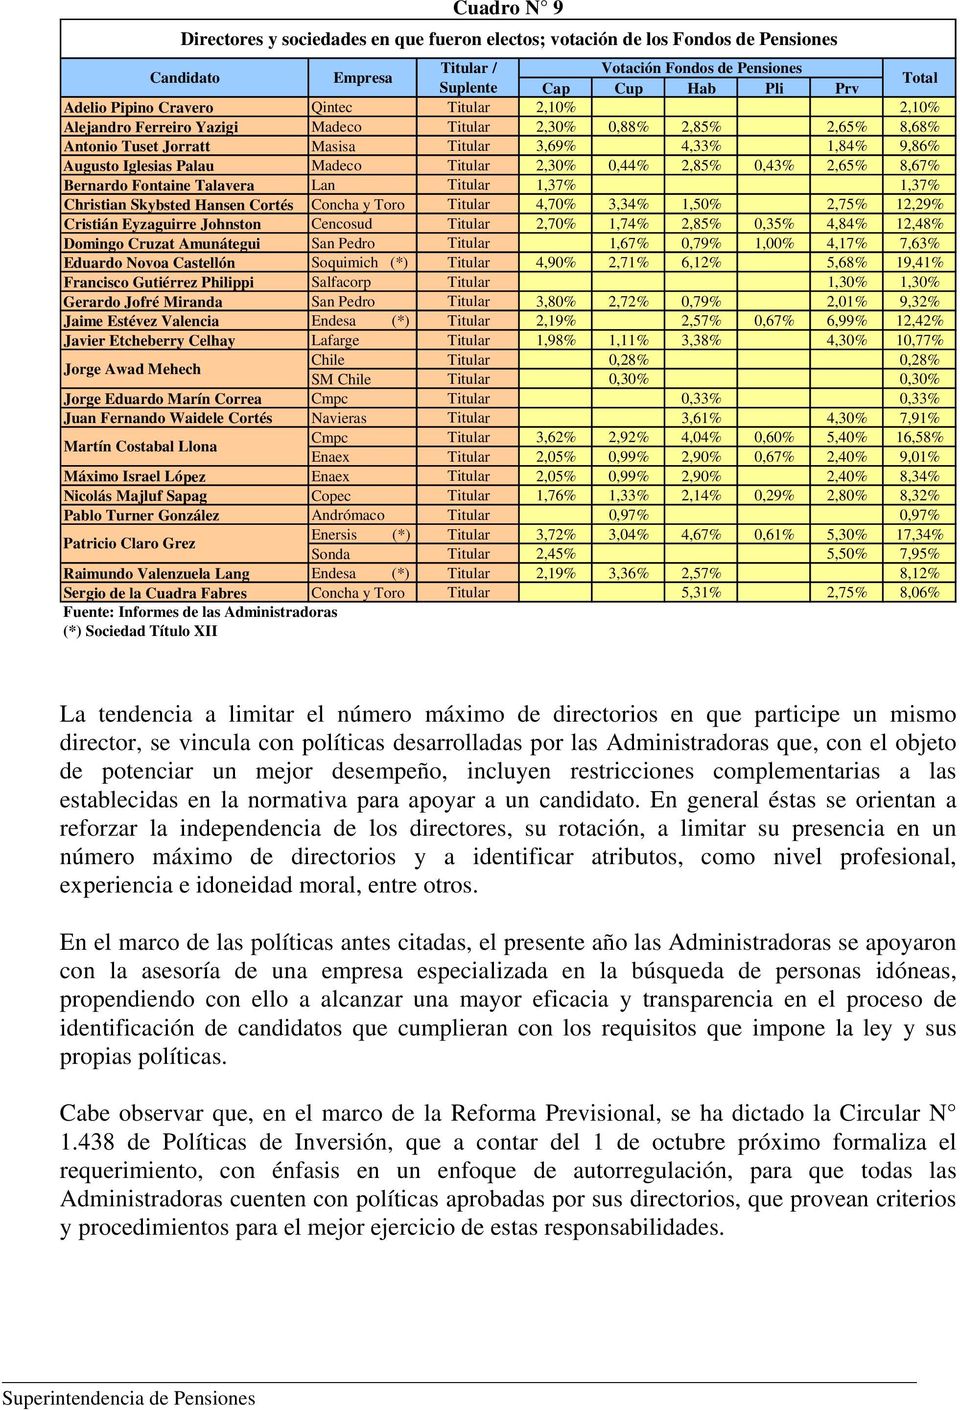 Madeco Titular 2,30% 0,44% 2,85% 0,43% 2,65% 8,67% Bernardo Fontaine Talavera Lan Titular 1,37% 1,37% Christian Skybsted Hansen Cortés Concha y Toro Titular 4,70% 3,34% 1,50% 2,75% 12,29% Cristián